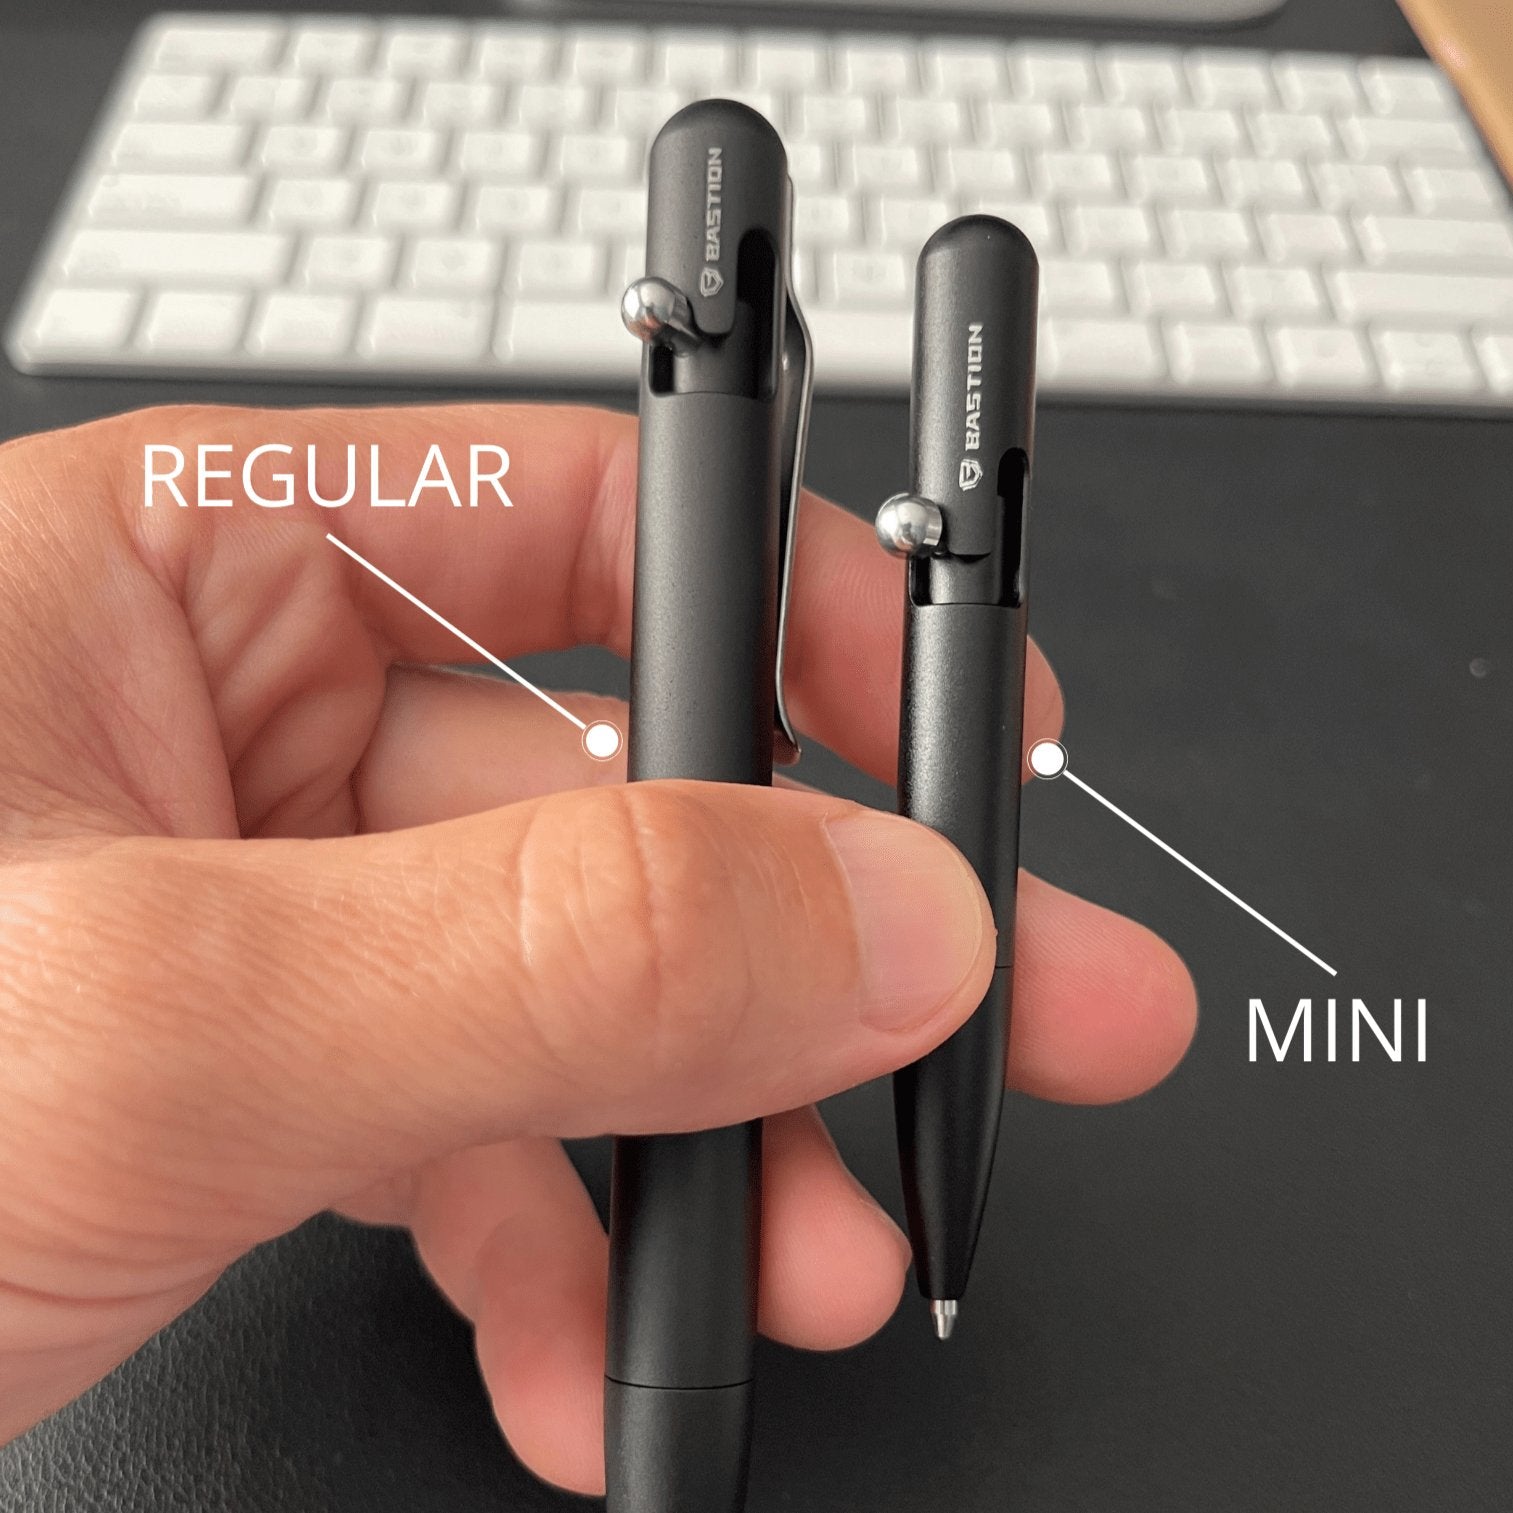 Mini Clipless Bolt Action Pen by Bastion® - Bastion Bolt Action Pen